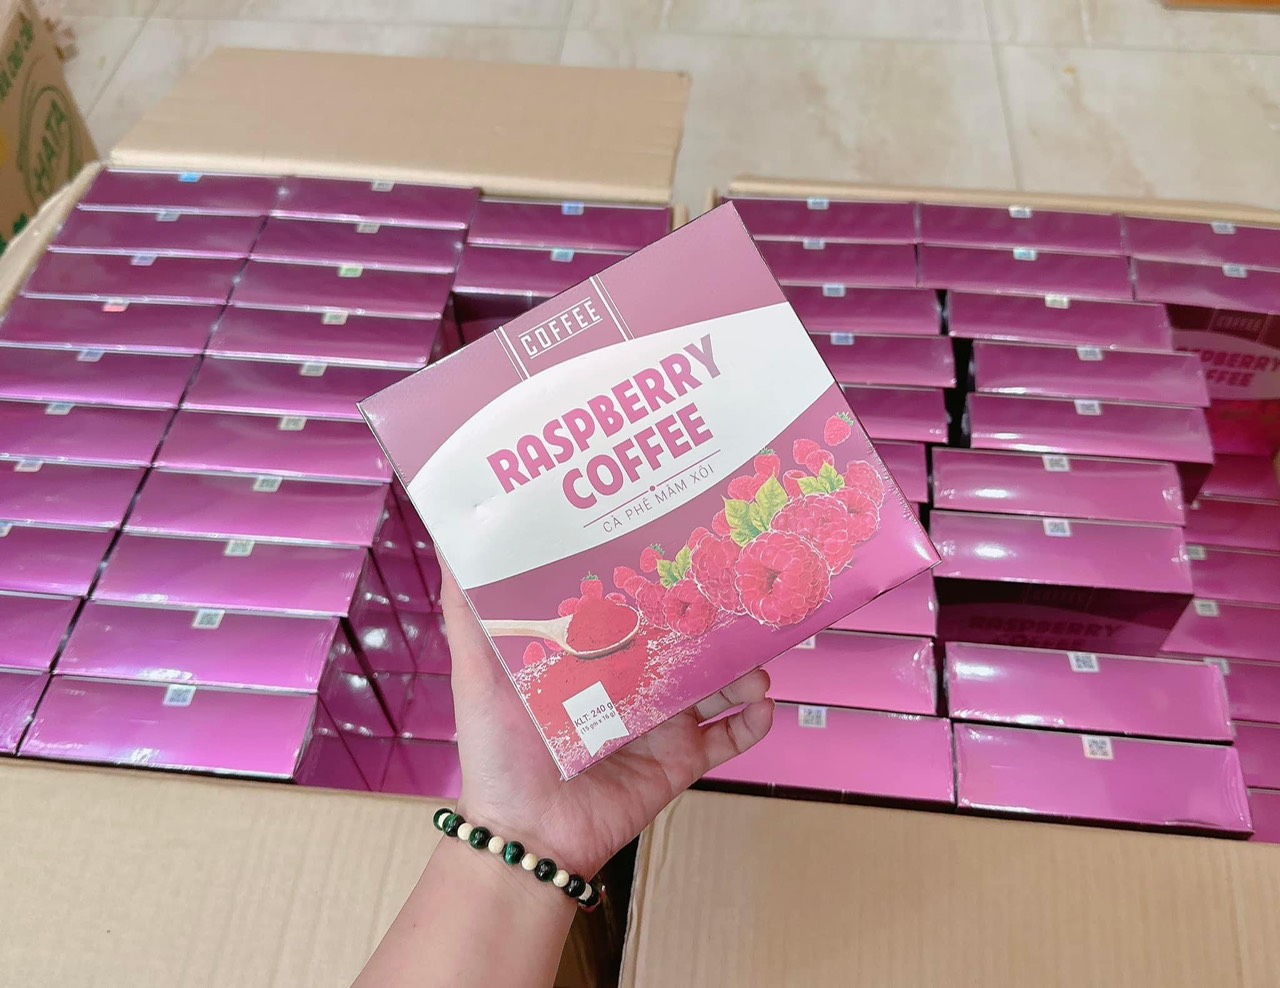 Raspberry Coffee Cà Phê Mân Xôi